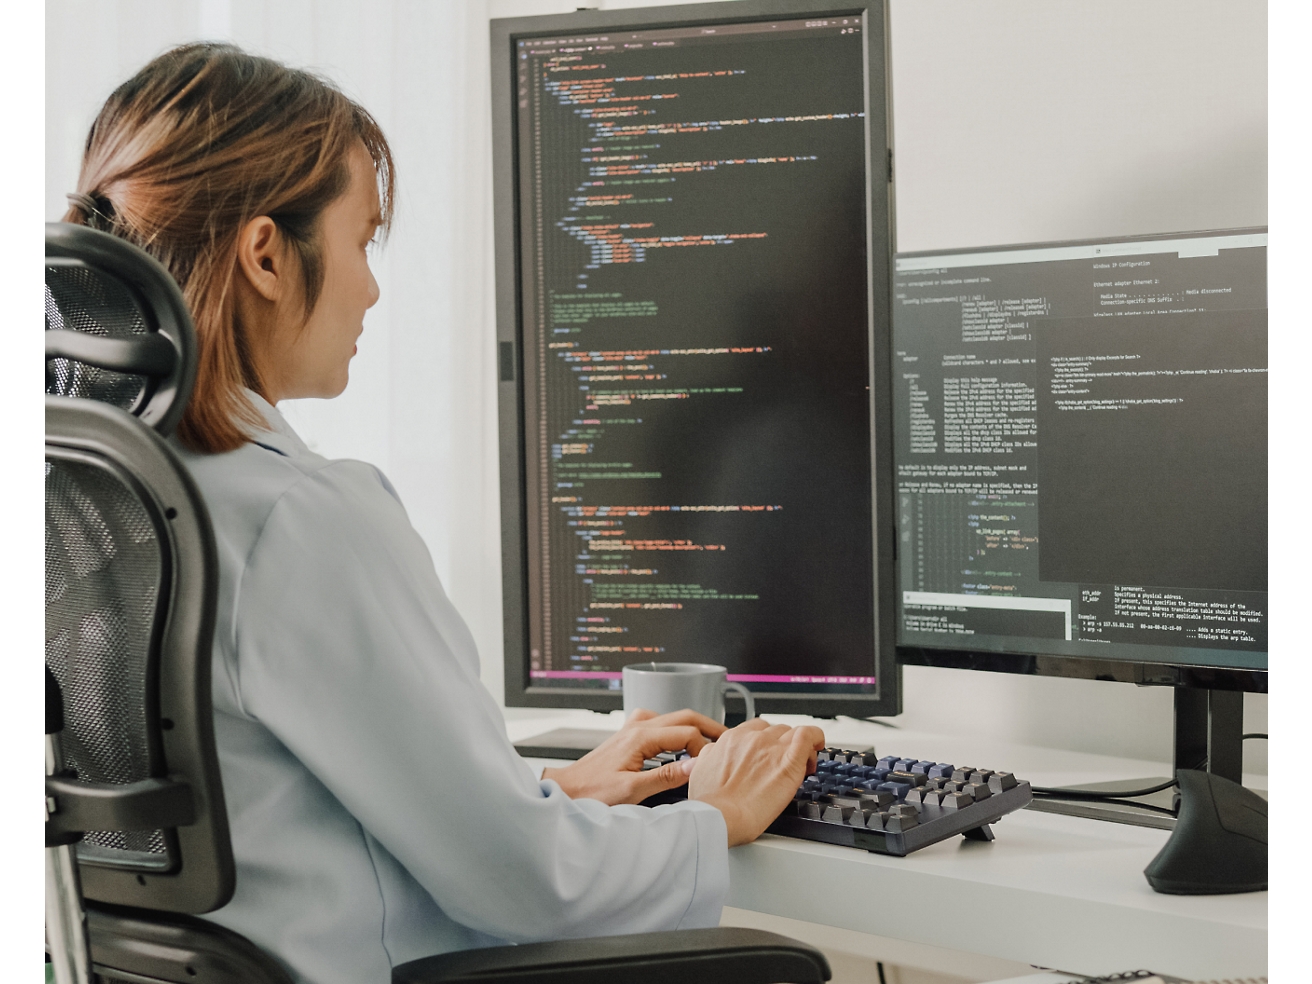 オフィス チェアに座り、プログラミング コードを表示する複数のスクリーン ディスプレイのあるコンピューターでコーディングをしている女性。